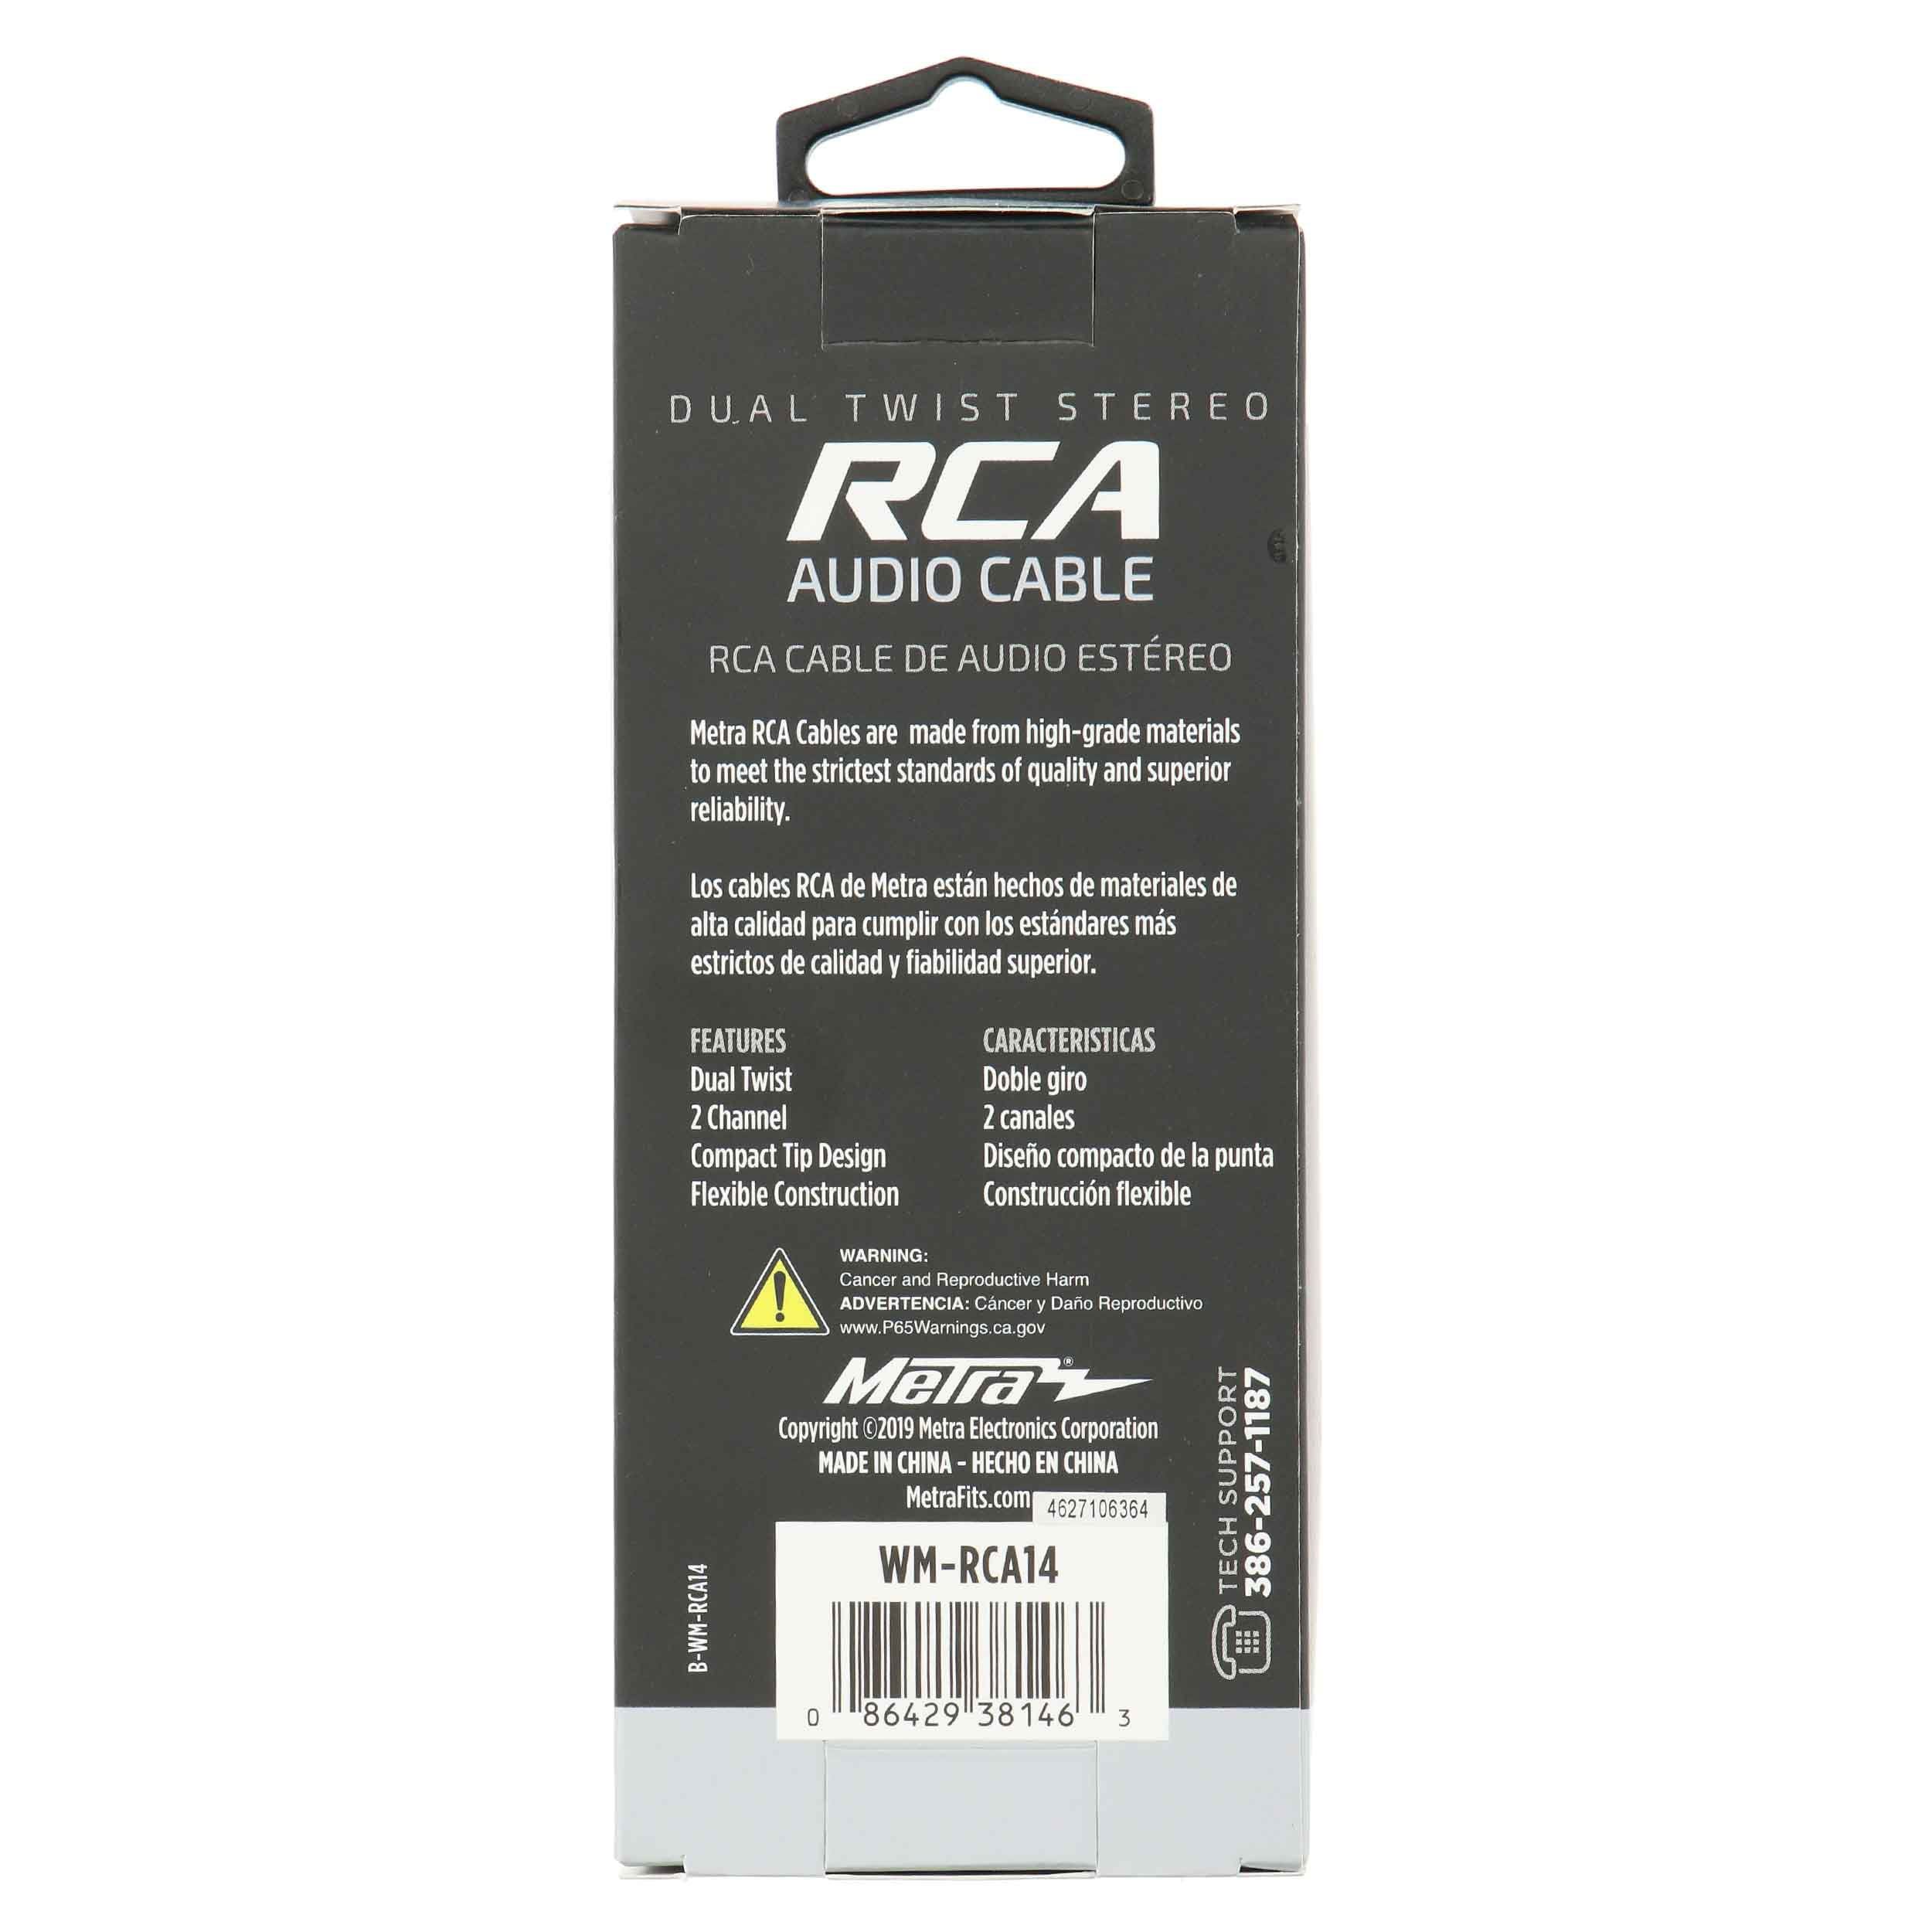 Metra WM-RCA14 14' RCA Cable